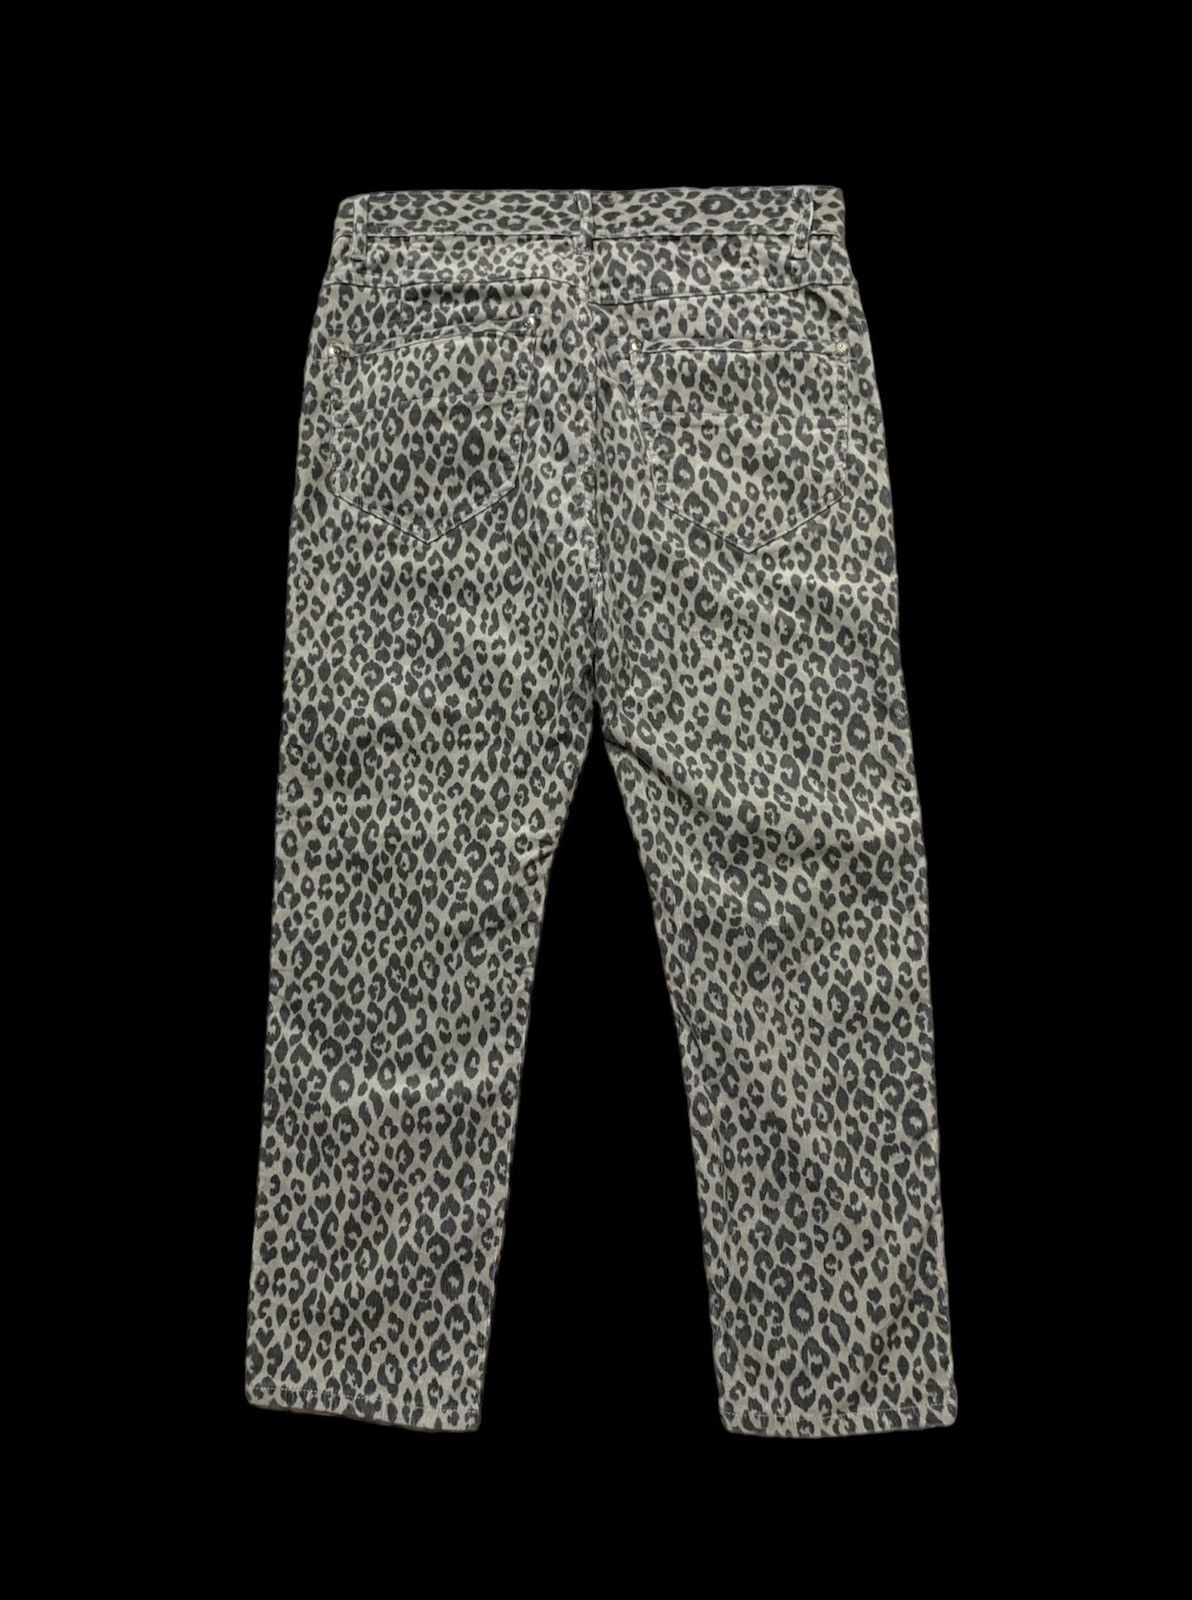 PPFM Leopard Gray Corduroy Velour Slim Pants Seditionaries - 2